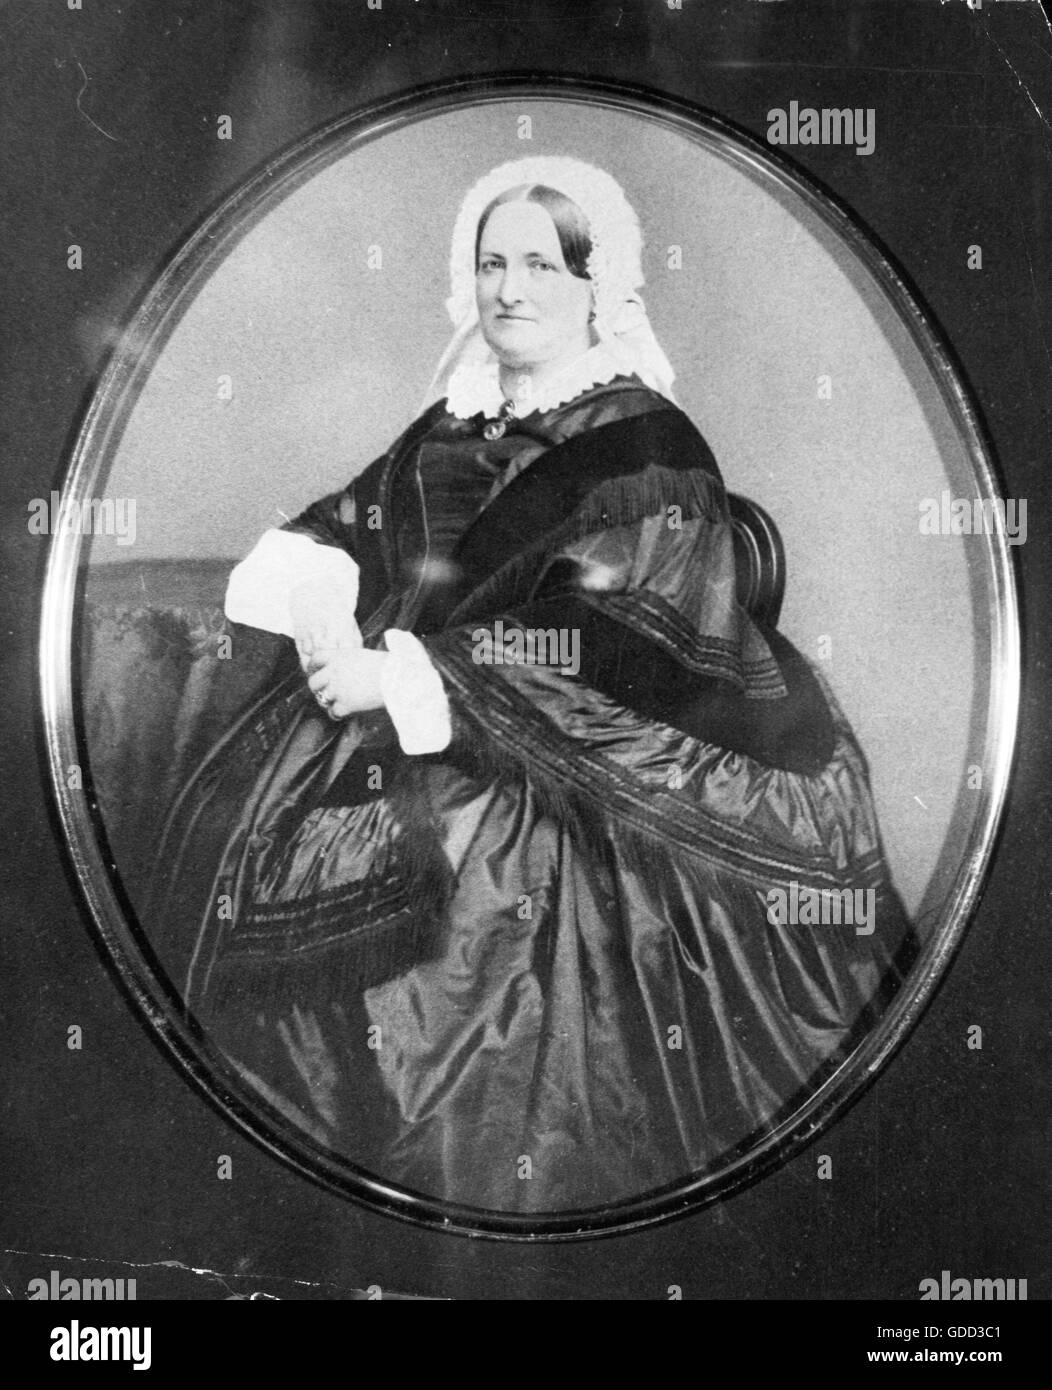 Tarrach, Friedrich Franz Gottlob Ludwig von, circa 1766 - 14.9.1834, diplomatico prussiano, sua seconda moglie Hedvig von Rosen, mezza lunghezza, circa 1850, Foto Stock